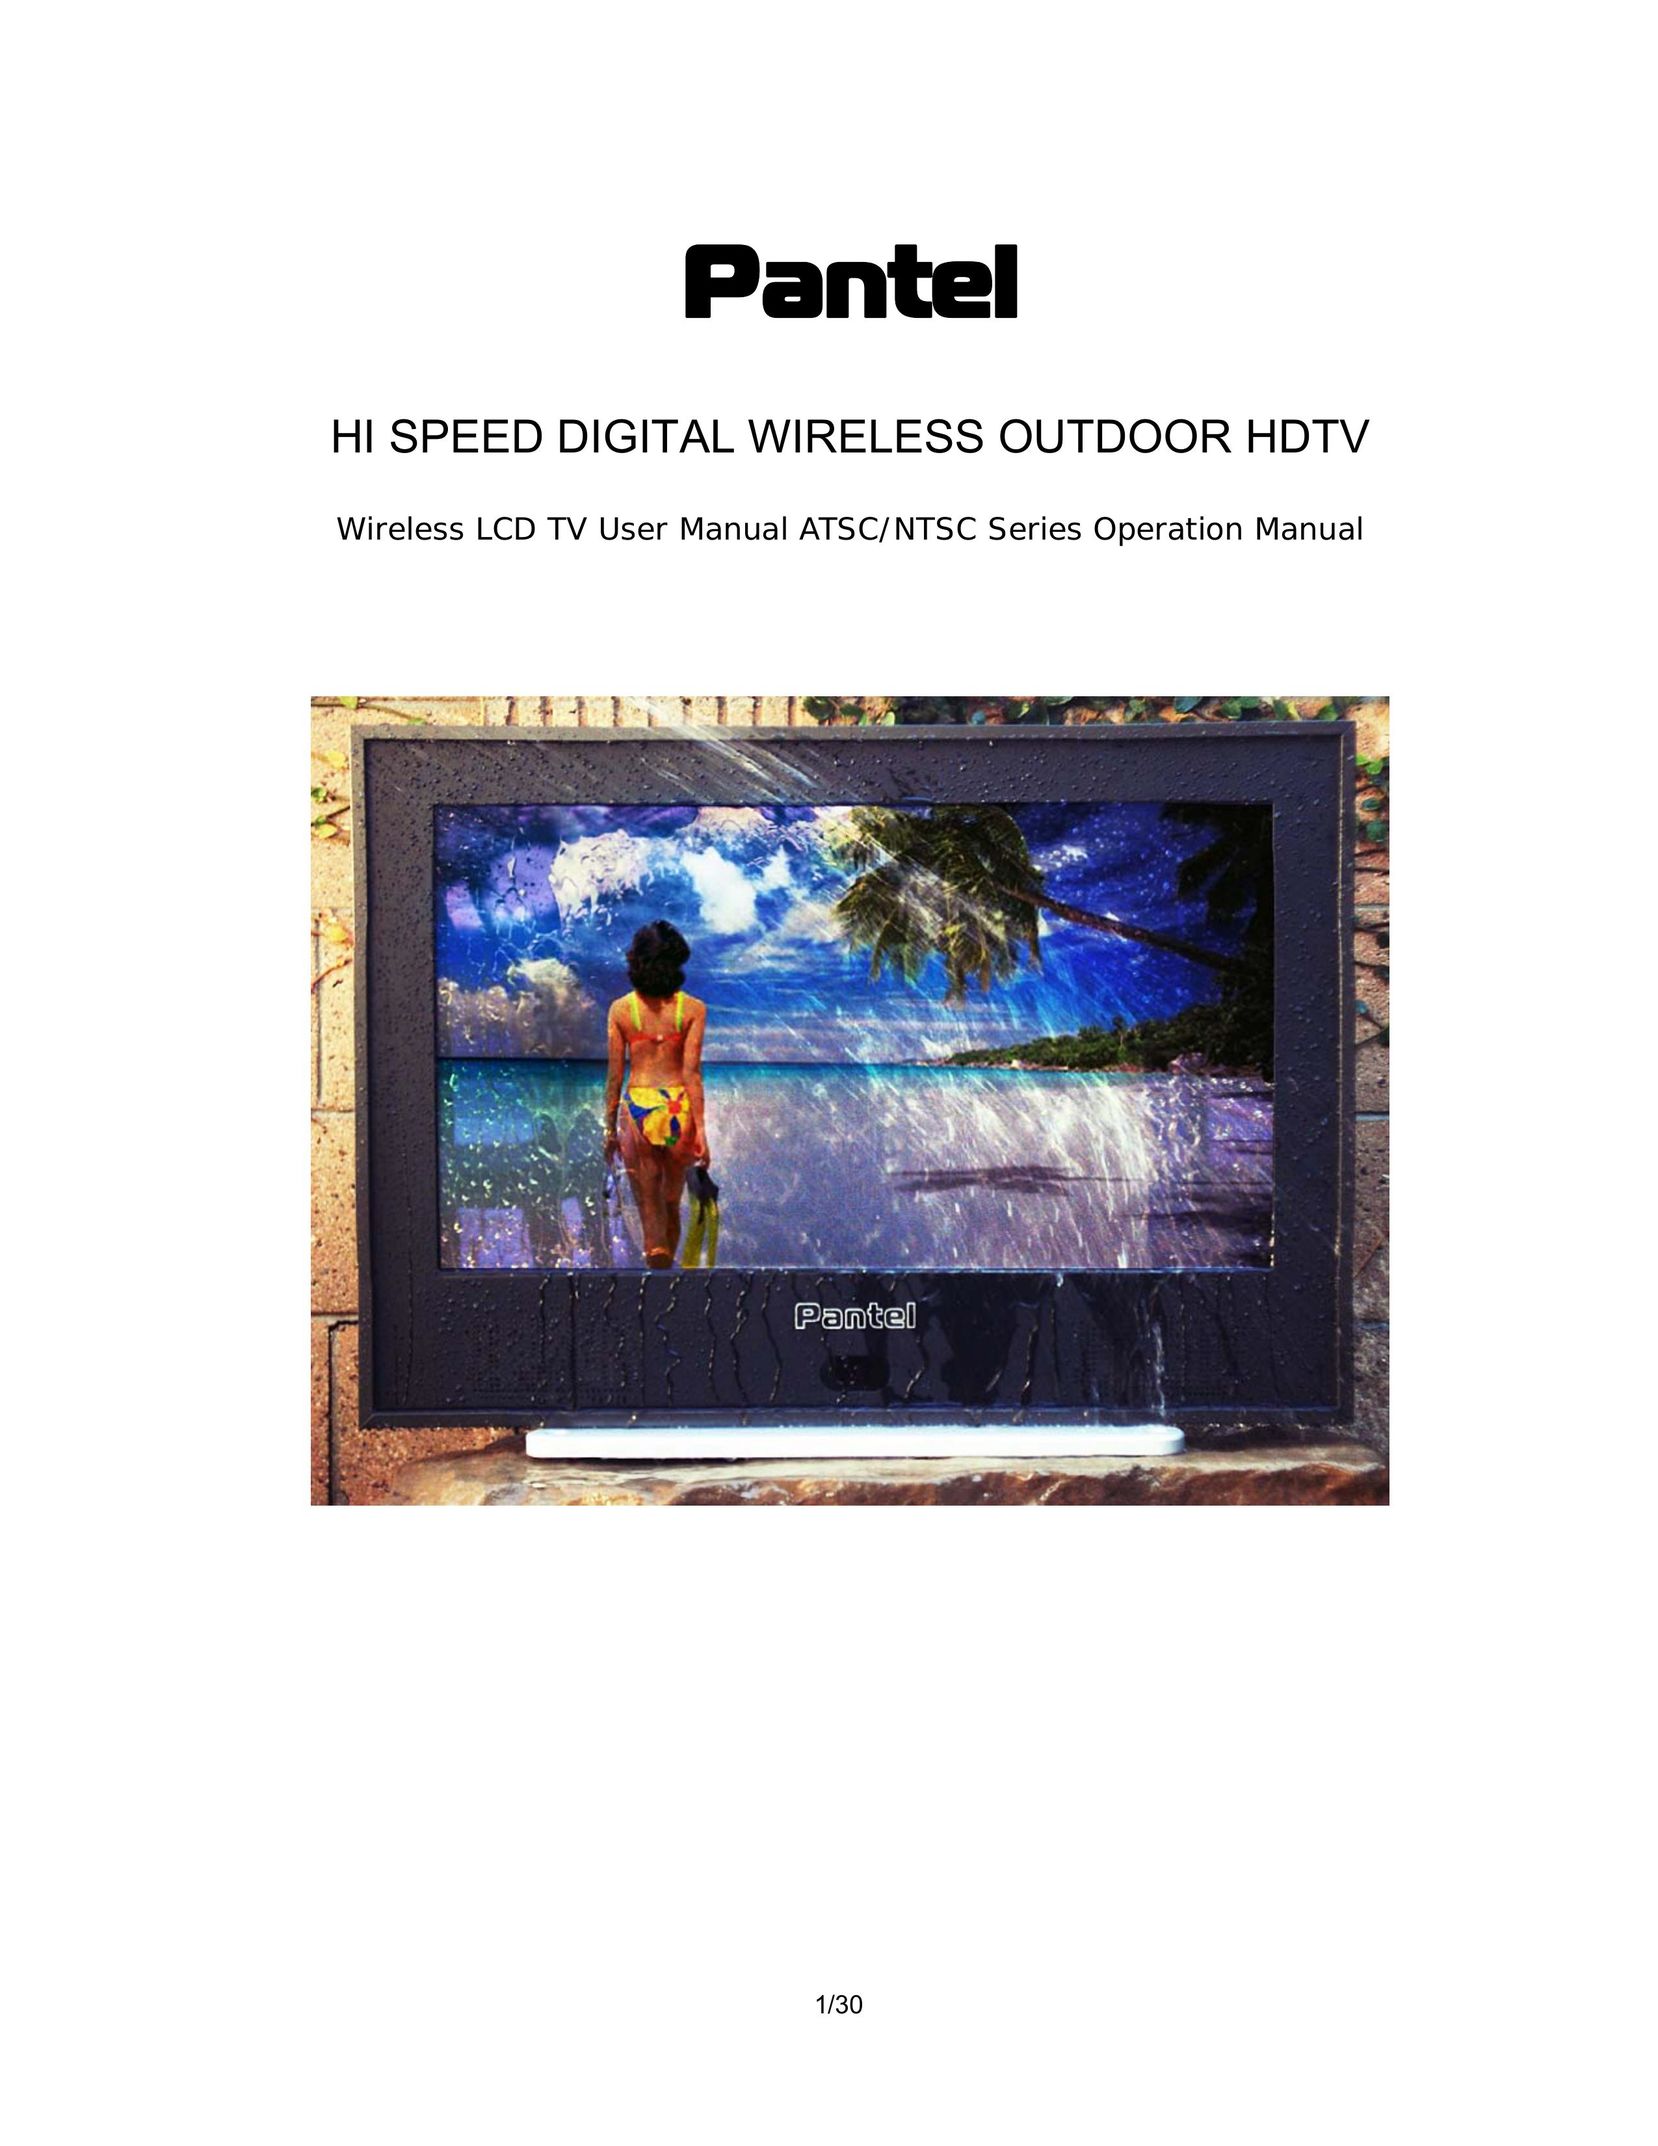 Pantel PAN650 Flat Panel Television User Manual